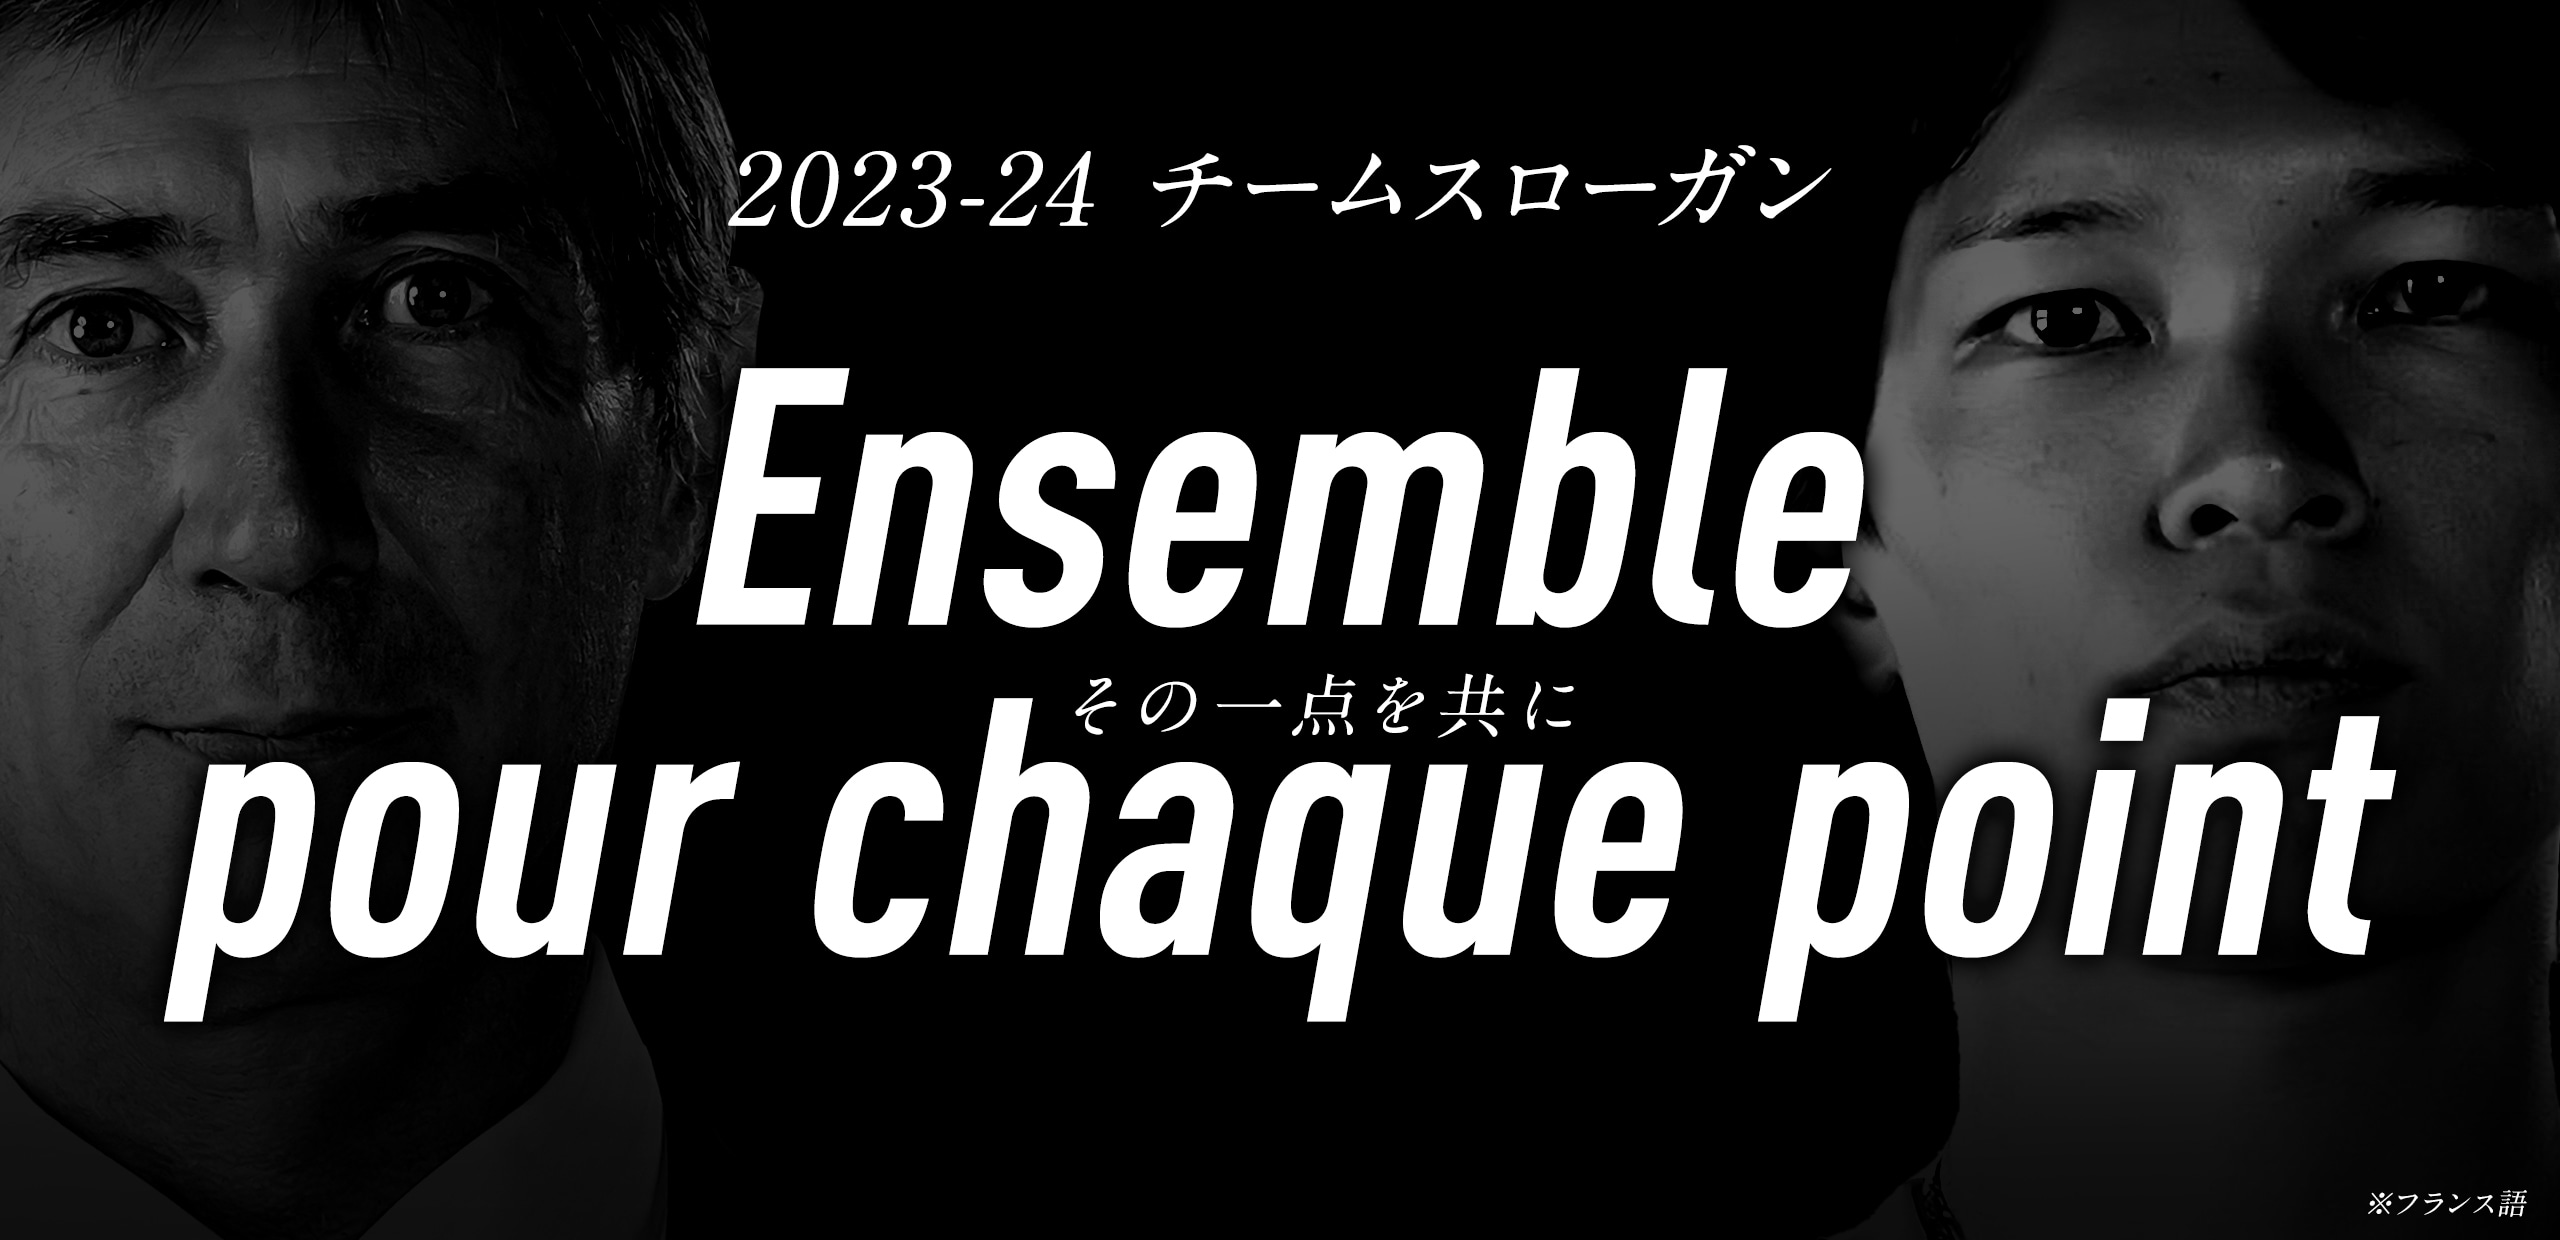 2023-24のチームスローガン Ensemble pour chaque point（フランス語でその一点を共に）